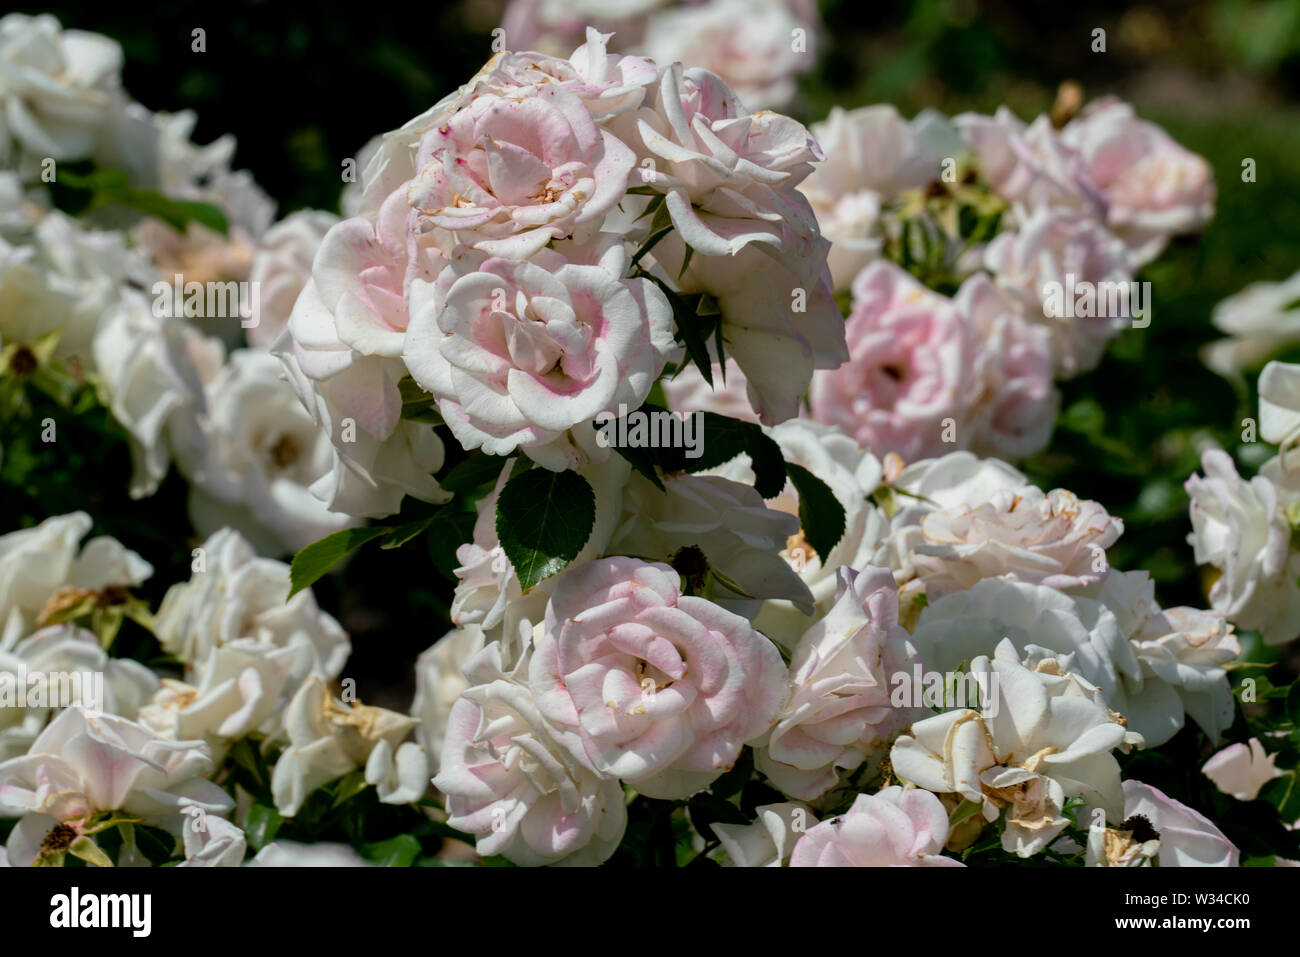 Schöne Nahaufnahme von mehrere weiße Rose Blume Köpfe der deutschen Ground Cover rose Aspirin mit bokeh Hintergrund und detaillierte Blütenblätter Stockfoto